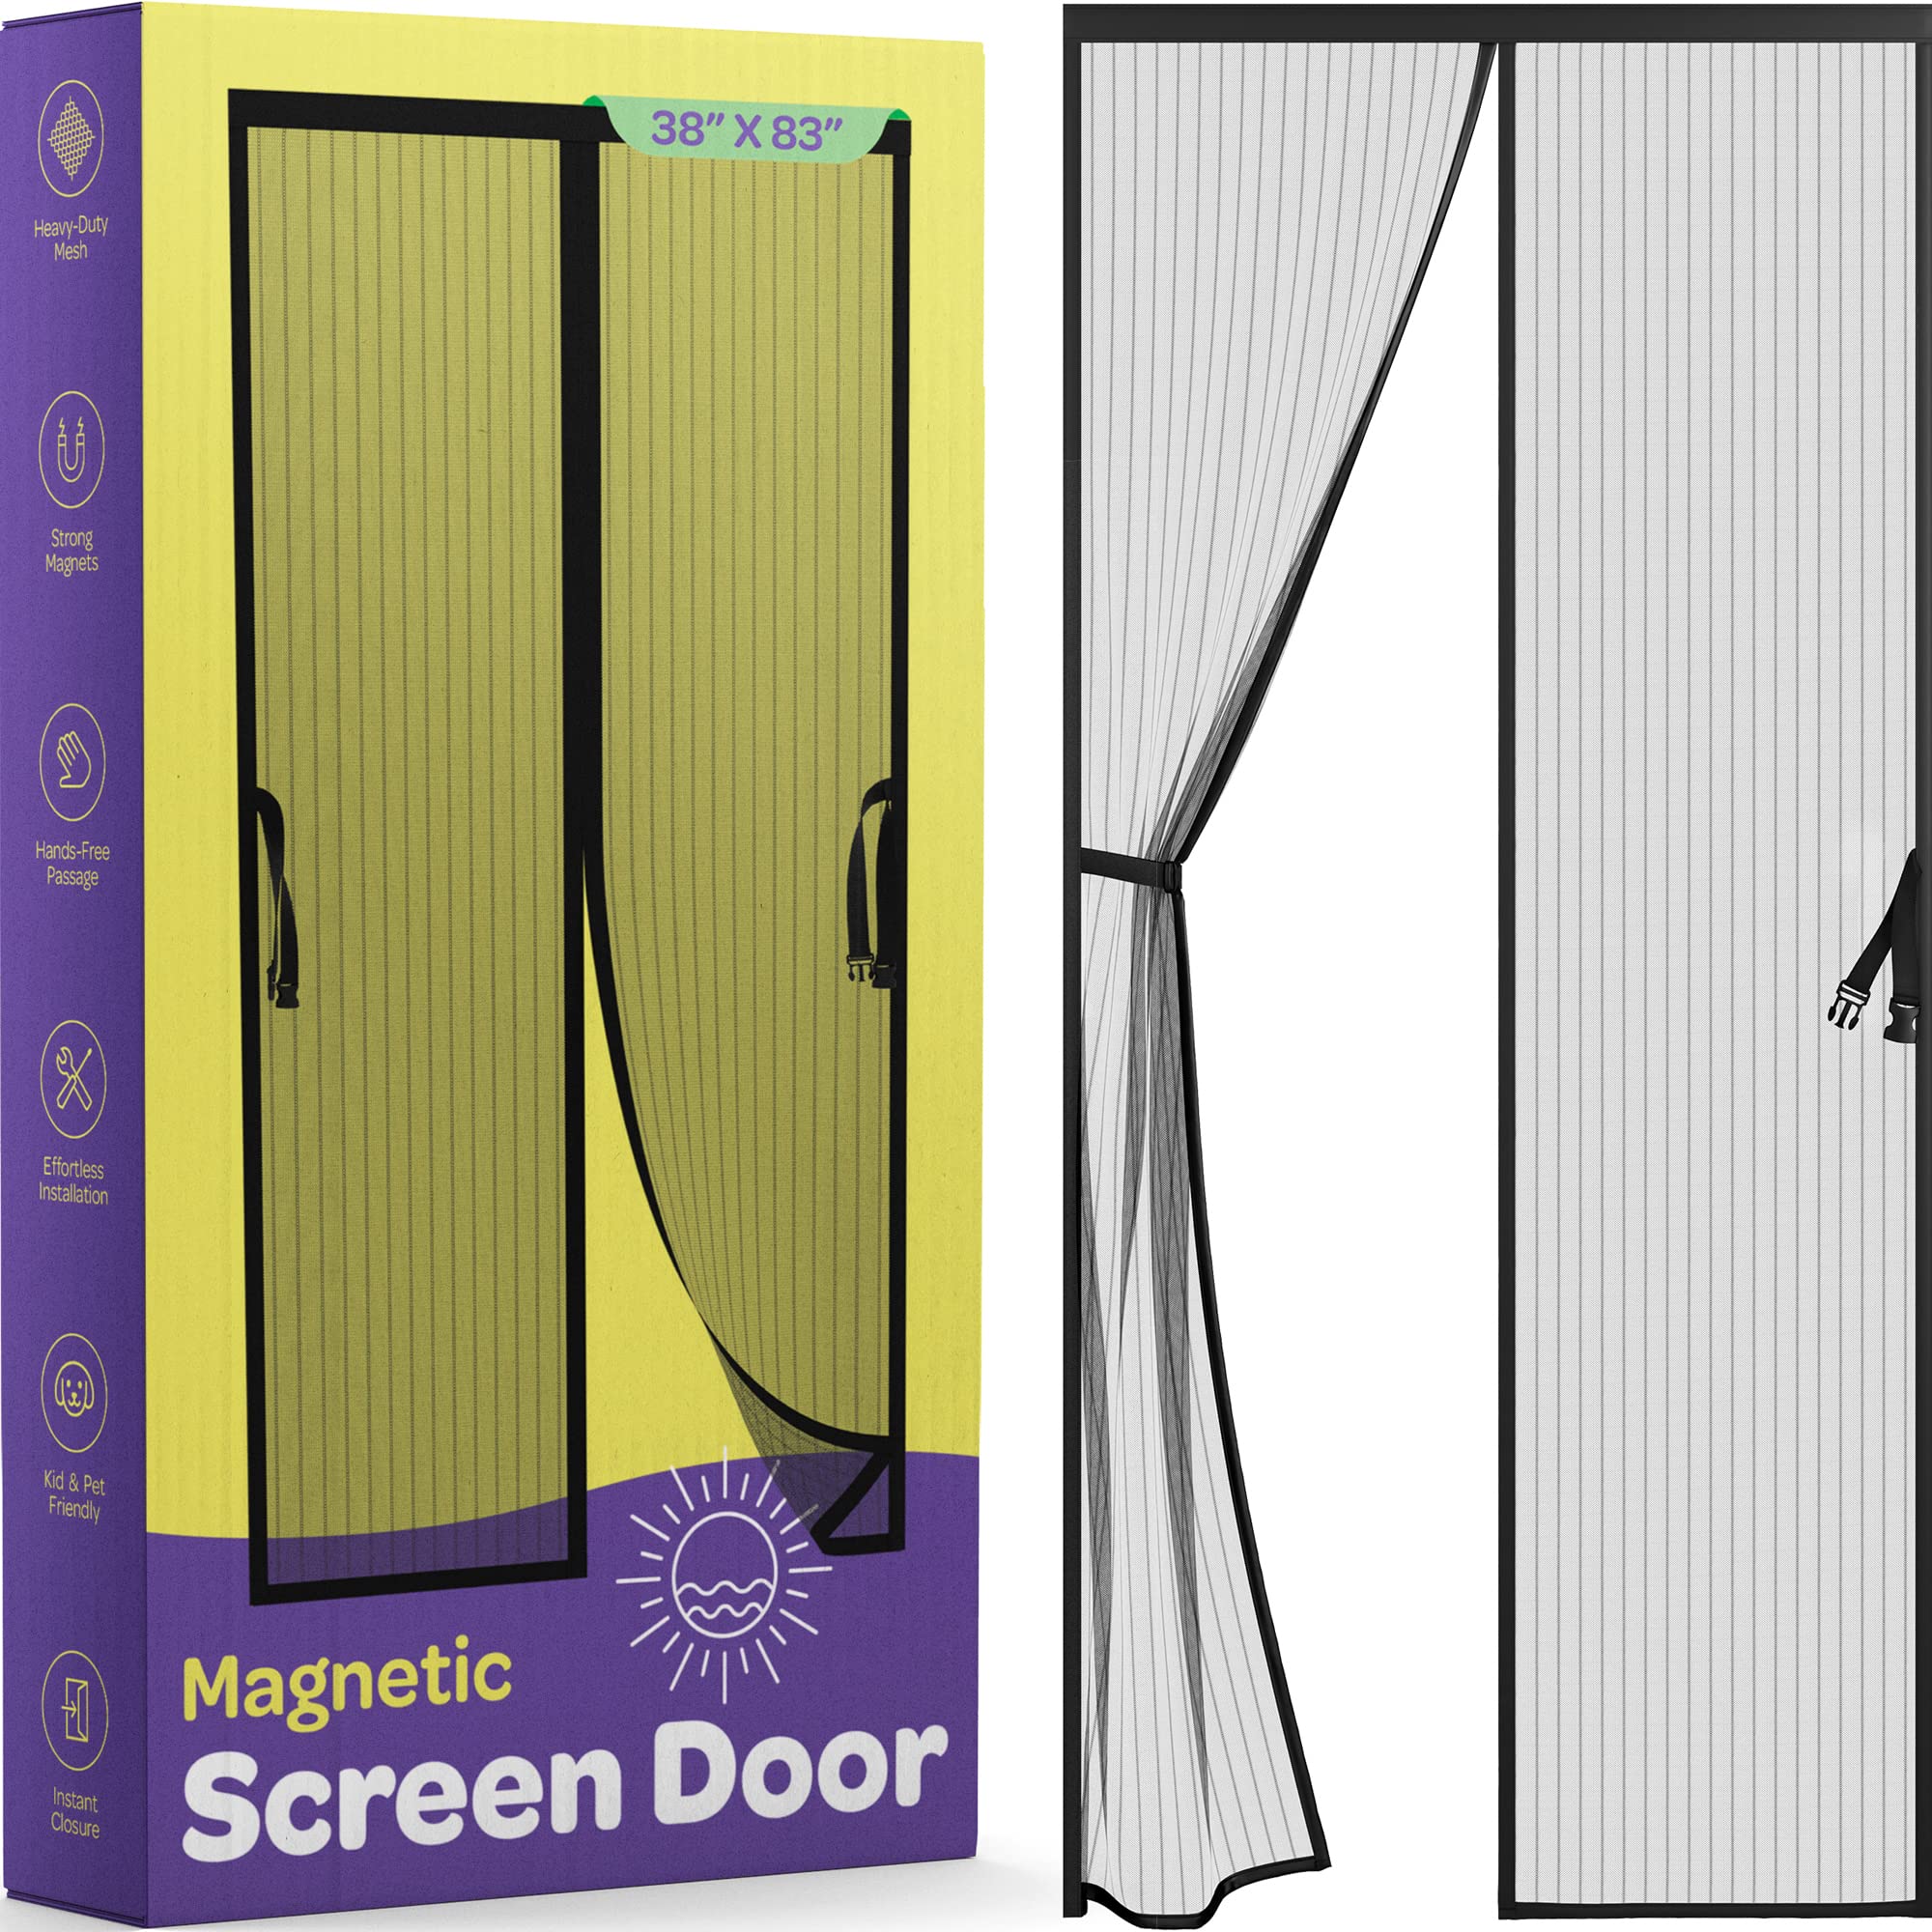 Hands-Free Magnetic Screen Door, Heavy Duty, Self Sealing Screen Door Mesh Protector, Pet and Kid-Friendly, Stay-Open Buckle, Fits Door Size (38